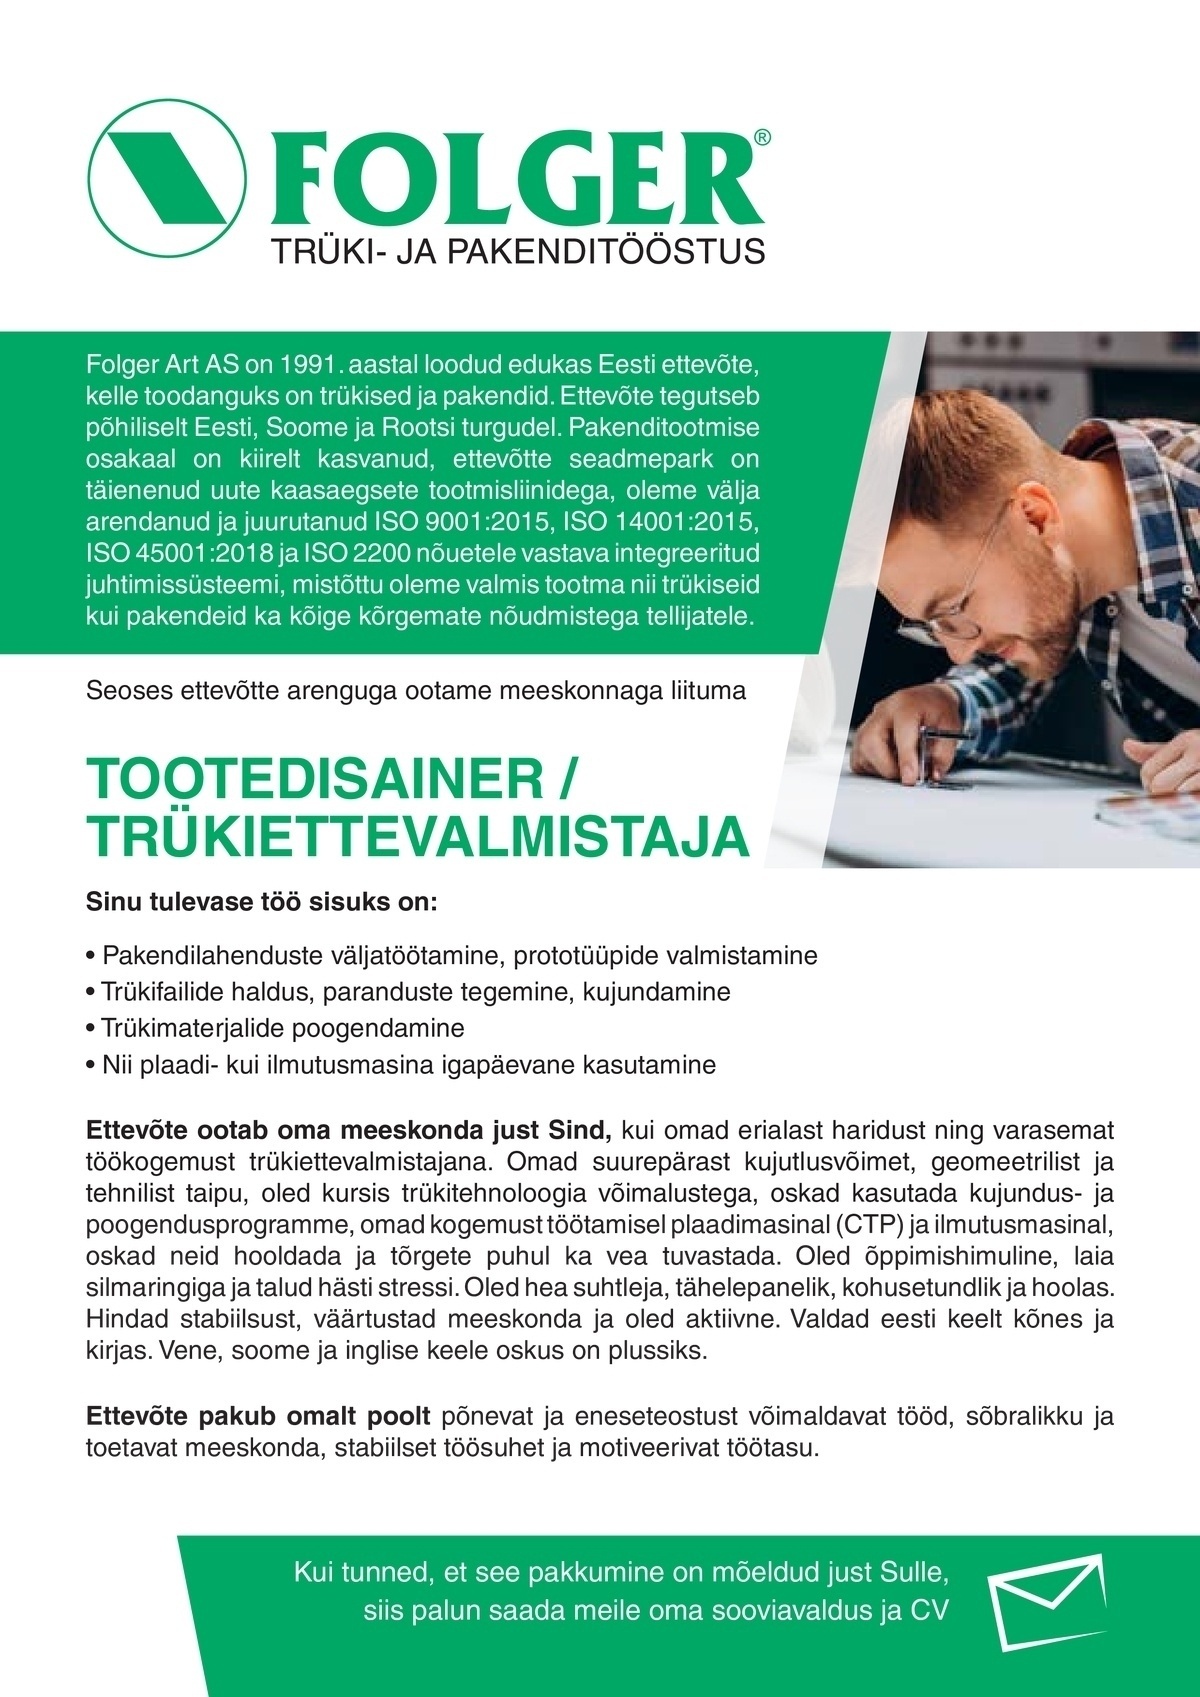 CVKeskus.ee klient Tootedisainer - trükiettevalmistaja